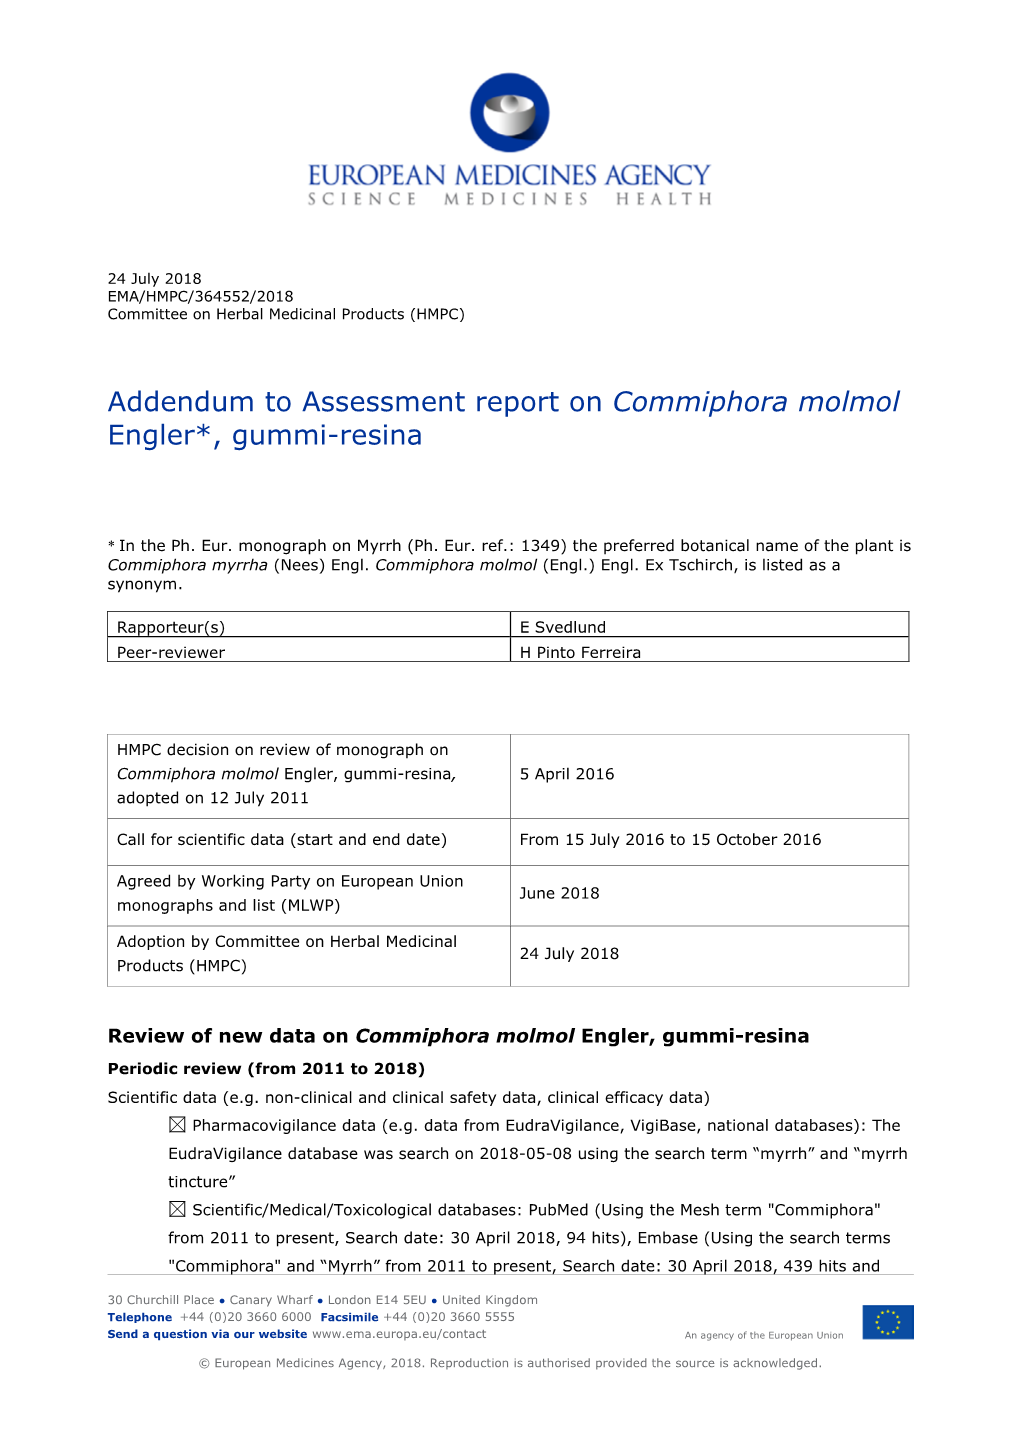 Addendum to Assessment Report on Commiphora Molmol Engler*, Gummi-Resina